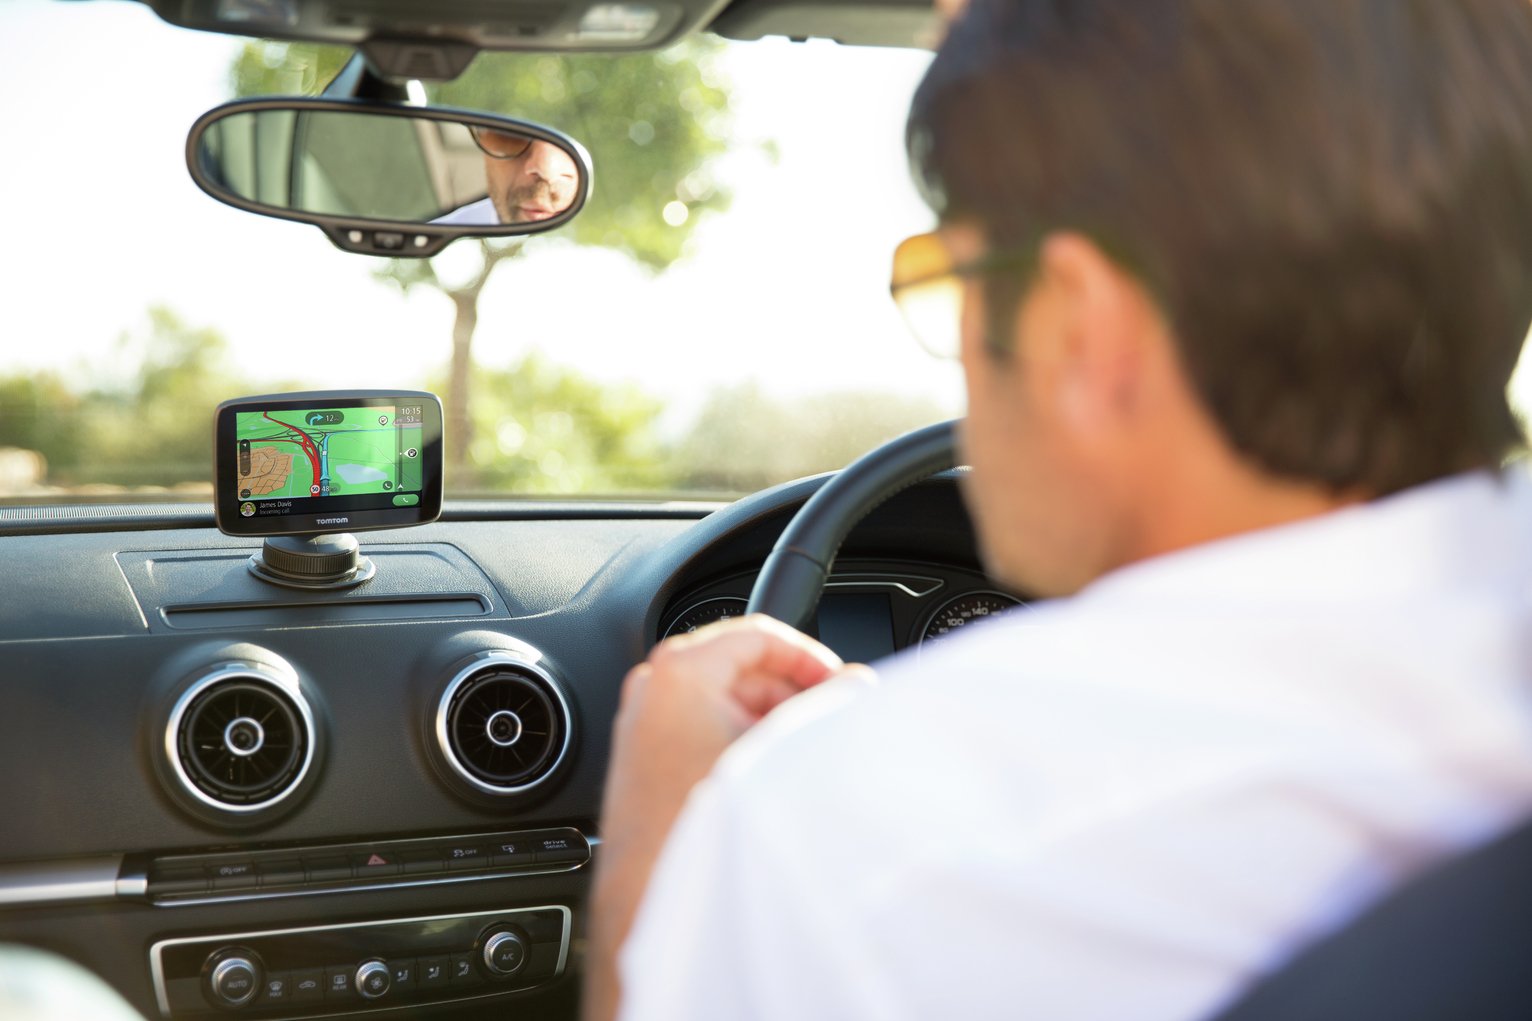 TomTom GO Essential 6 Inch EU Lifetime Maps &Traffic Sat Nav Review